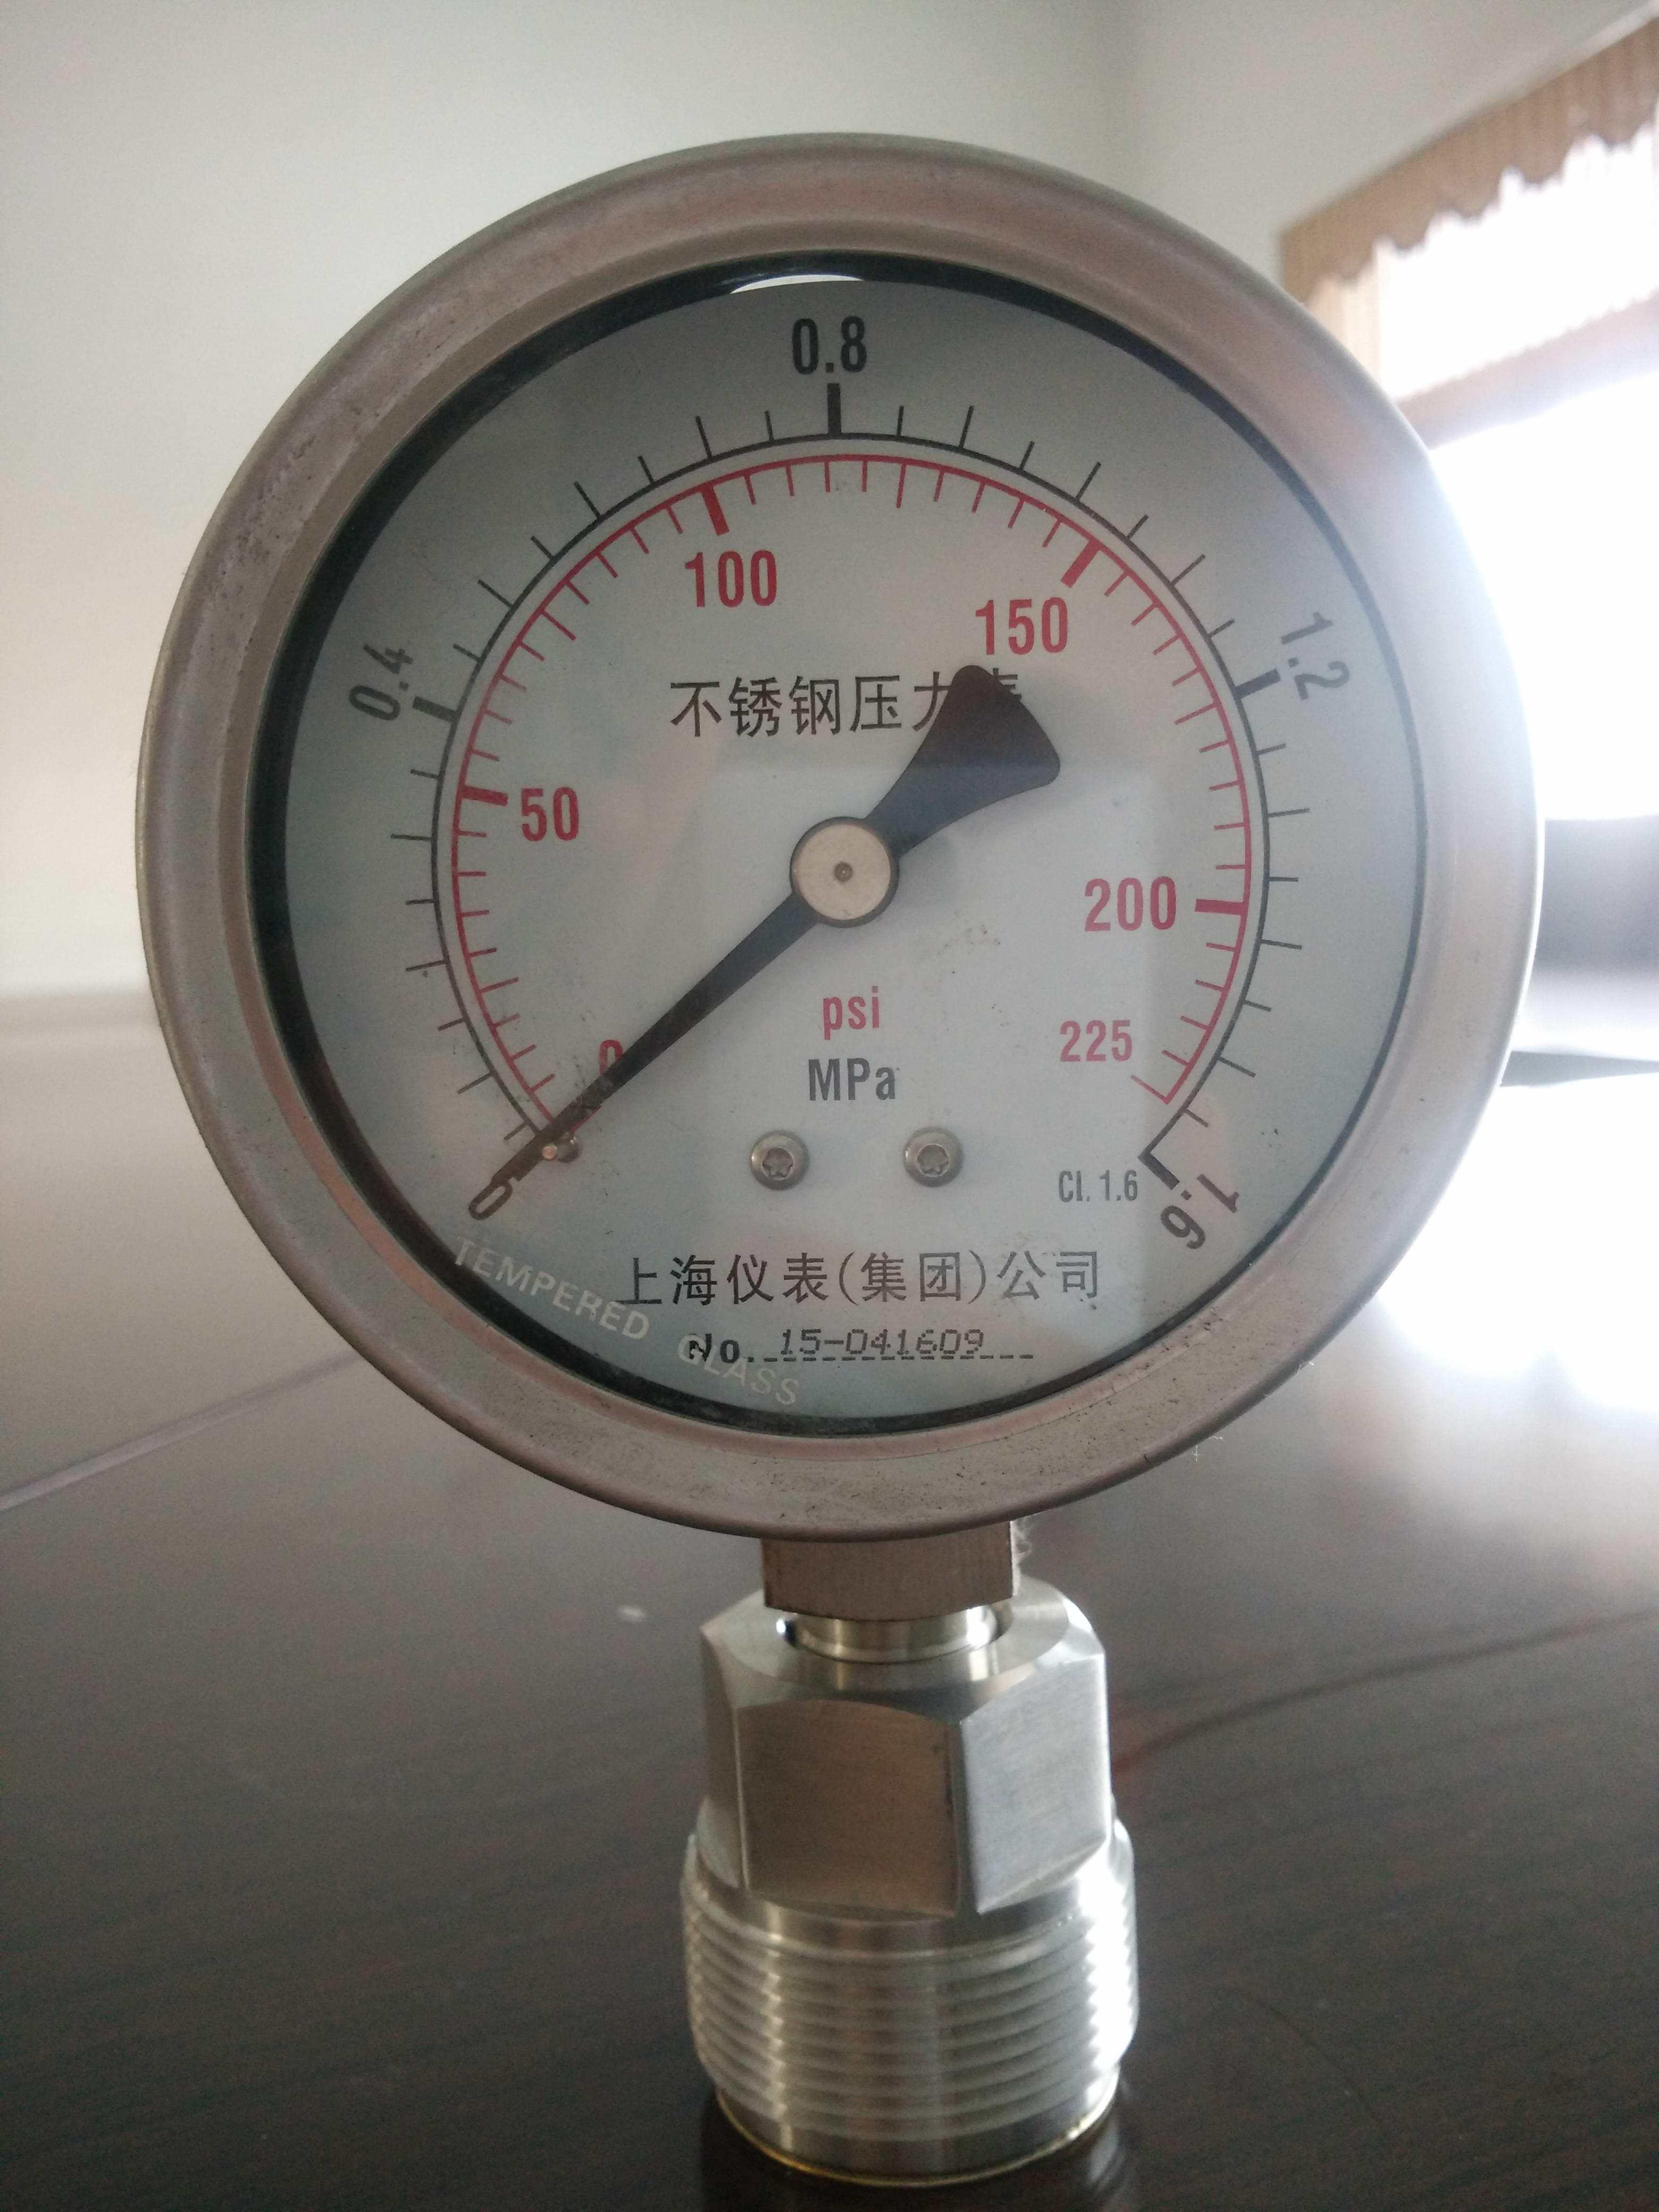 Y-100B-F不锈钢压力表